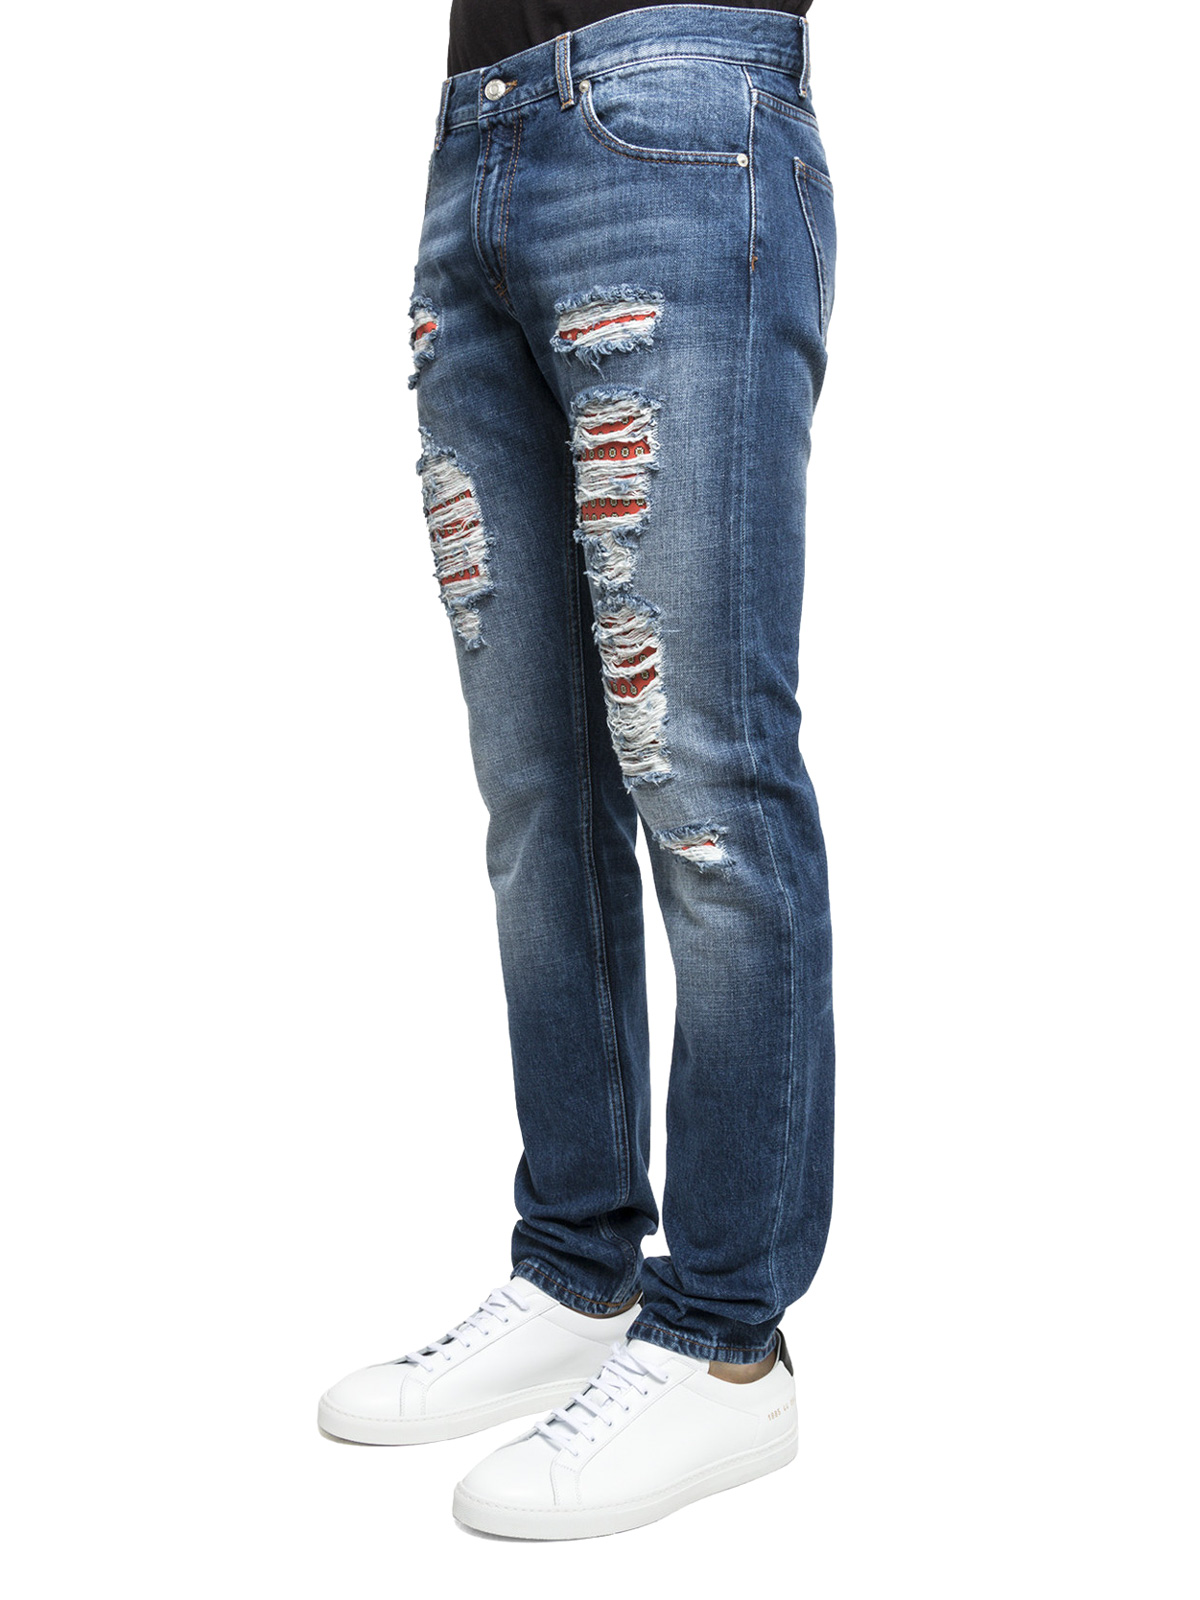 alexander mcqueen jeans mens